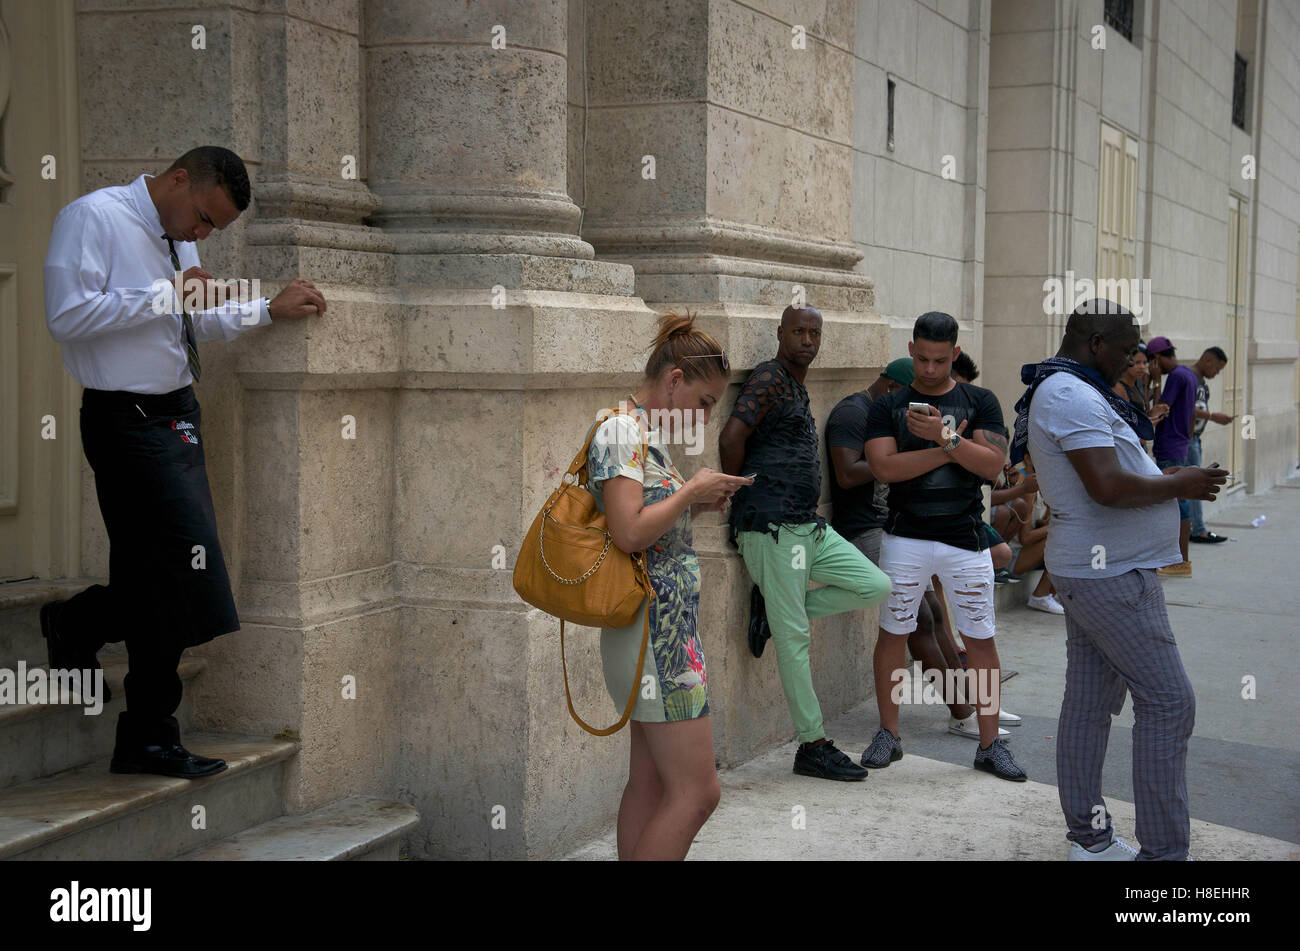 People with smartphones in the streets of La Havana - Cuba Stock Photo